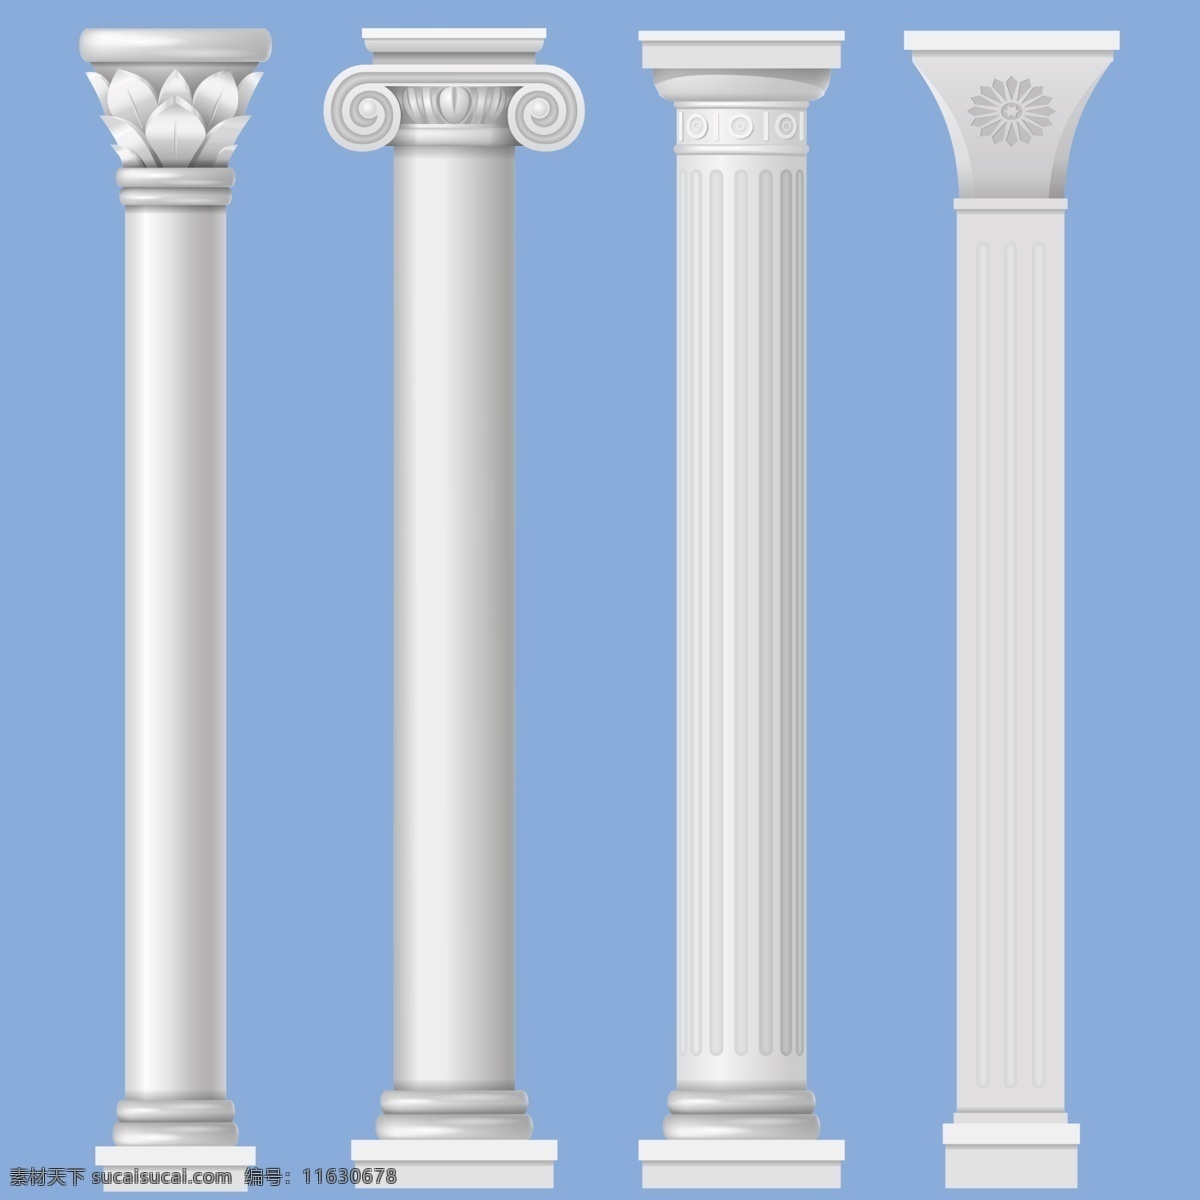 罗马柱图片 罗马柱 柱子 建筑造型 雕塑 文化艺术 传统文化